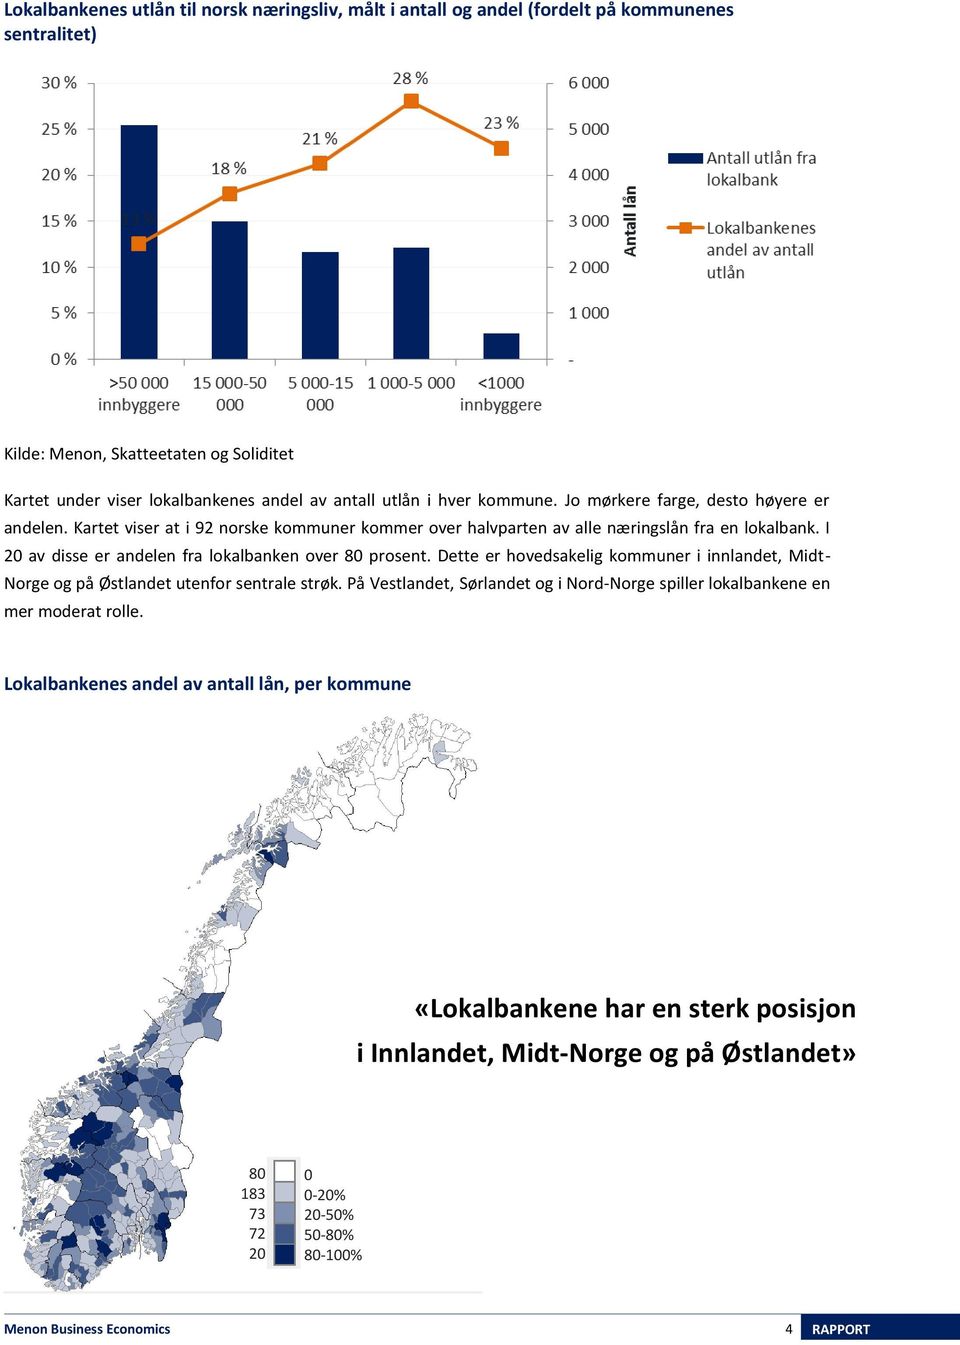 I 20 av disse er andelen fra lokalbanken over 80 prosent. Dette er hovedsakelig kommuner i innlandet, Midt- Norge og på Østlandet utenfor sentrale strøk.